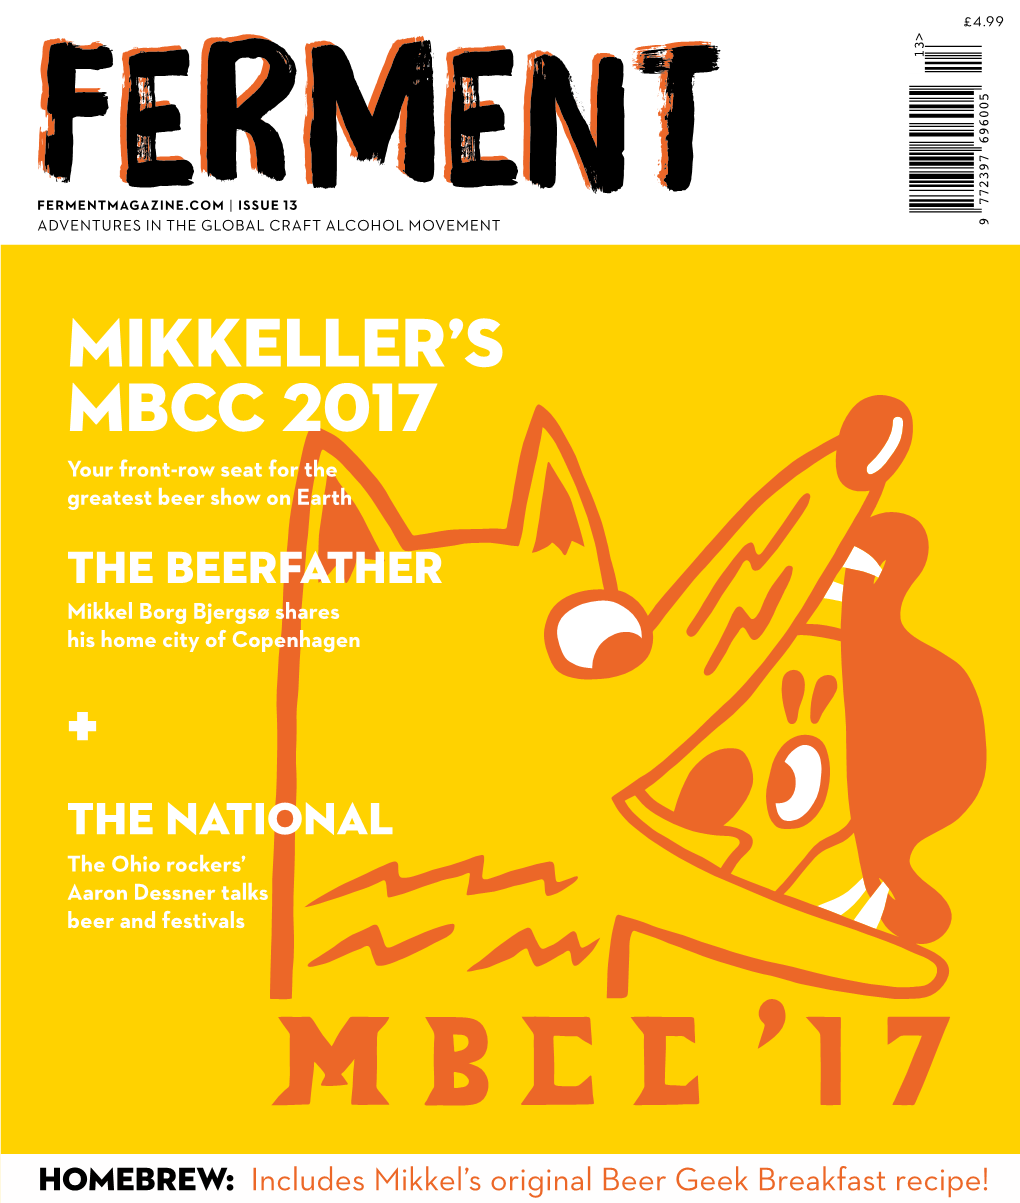 Mikkeller's MBCC 2017 +